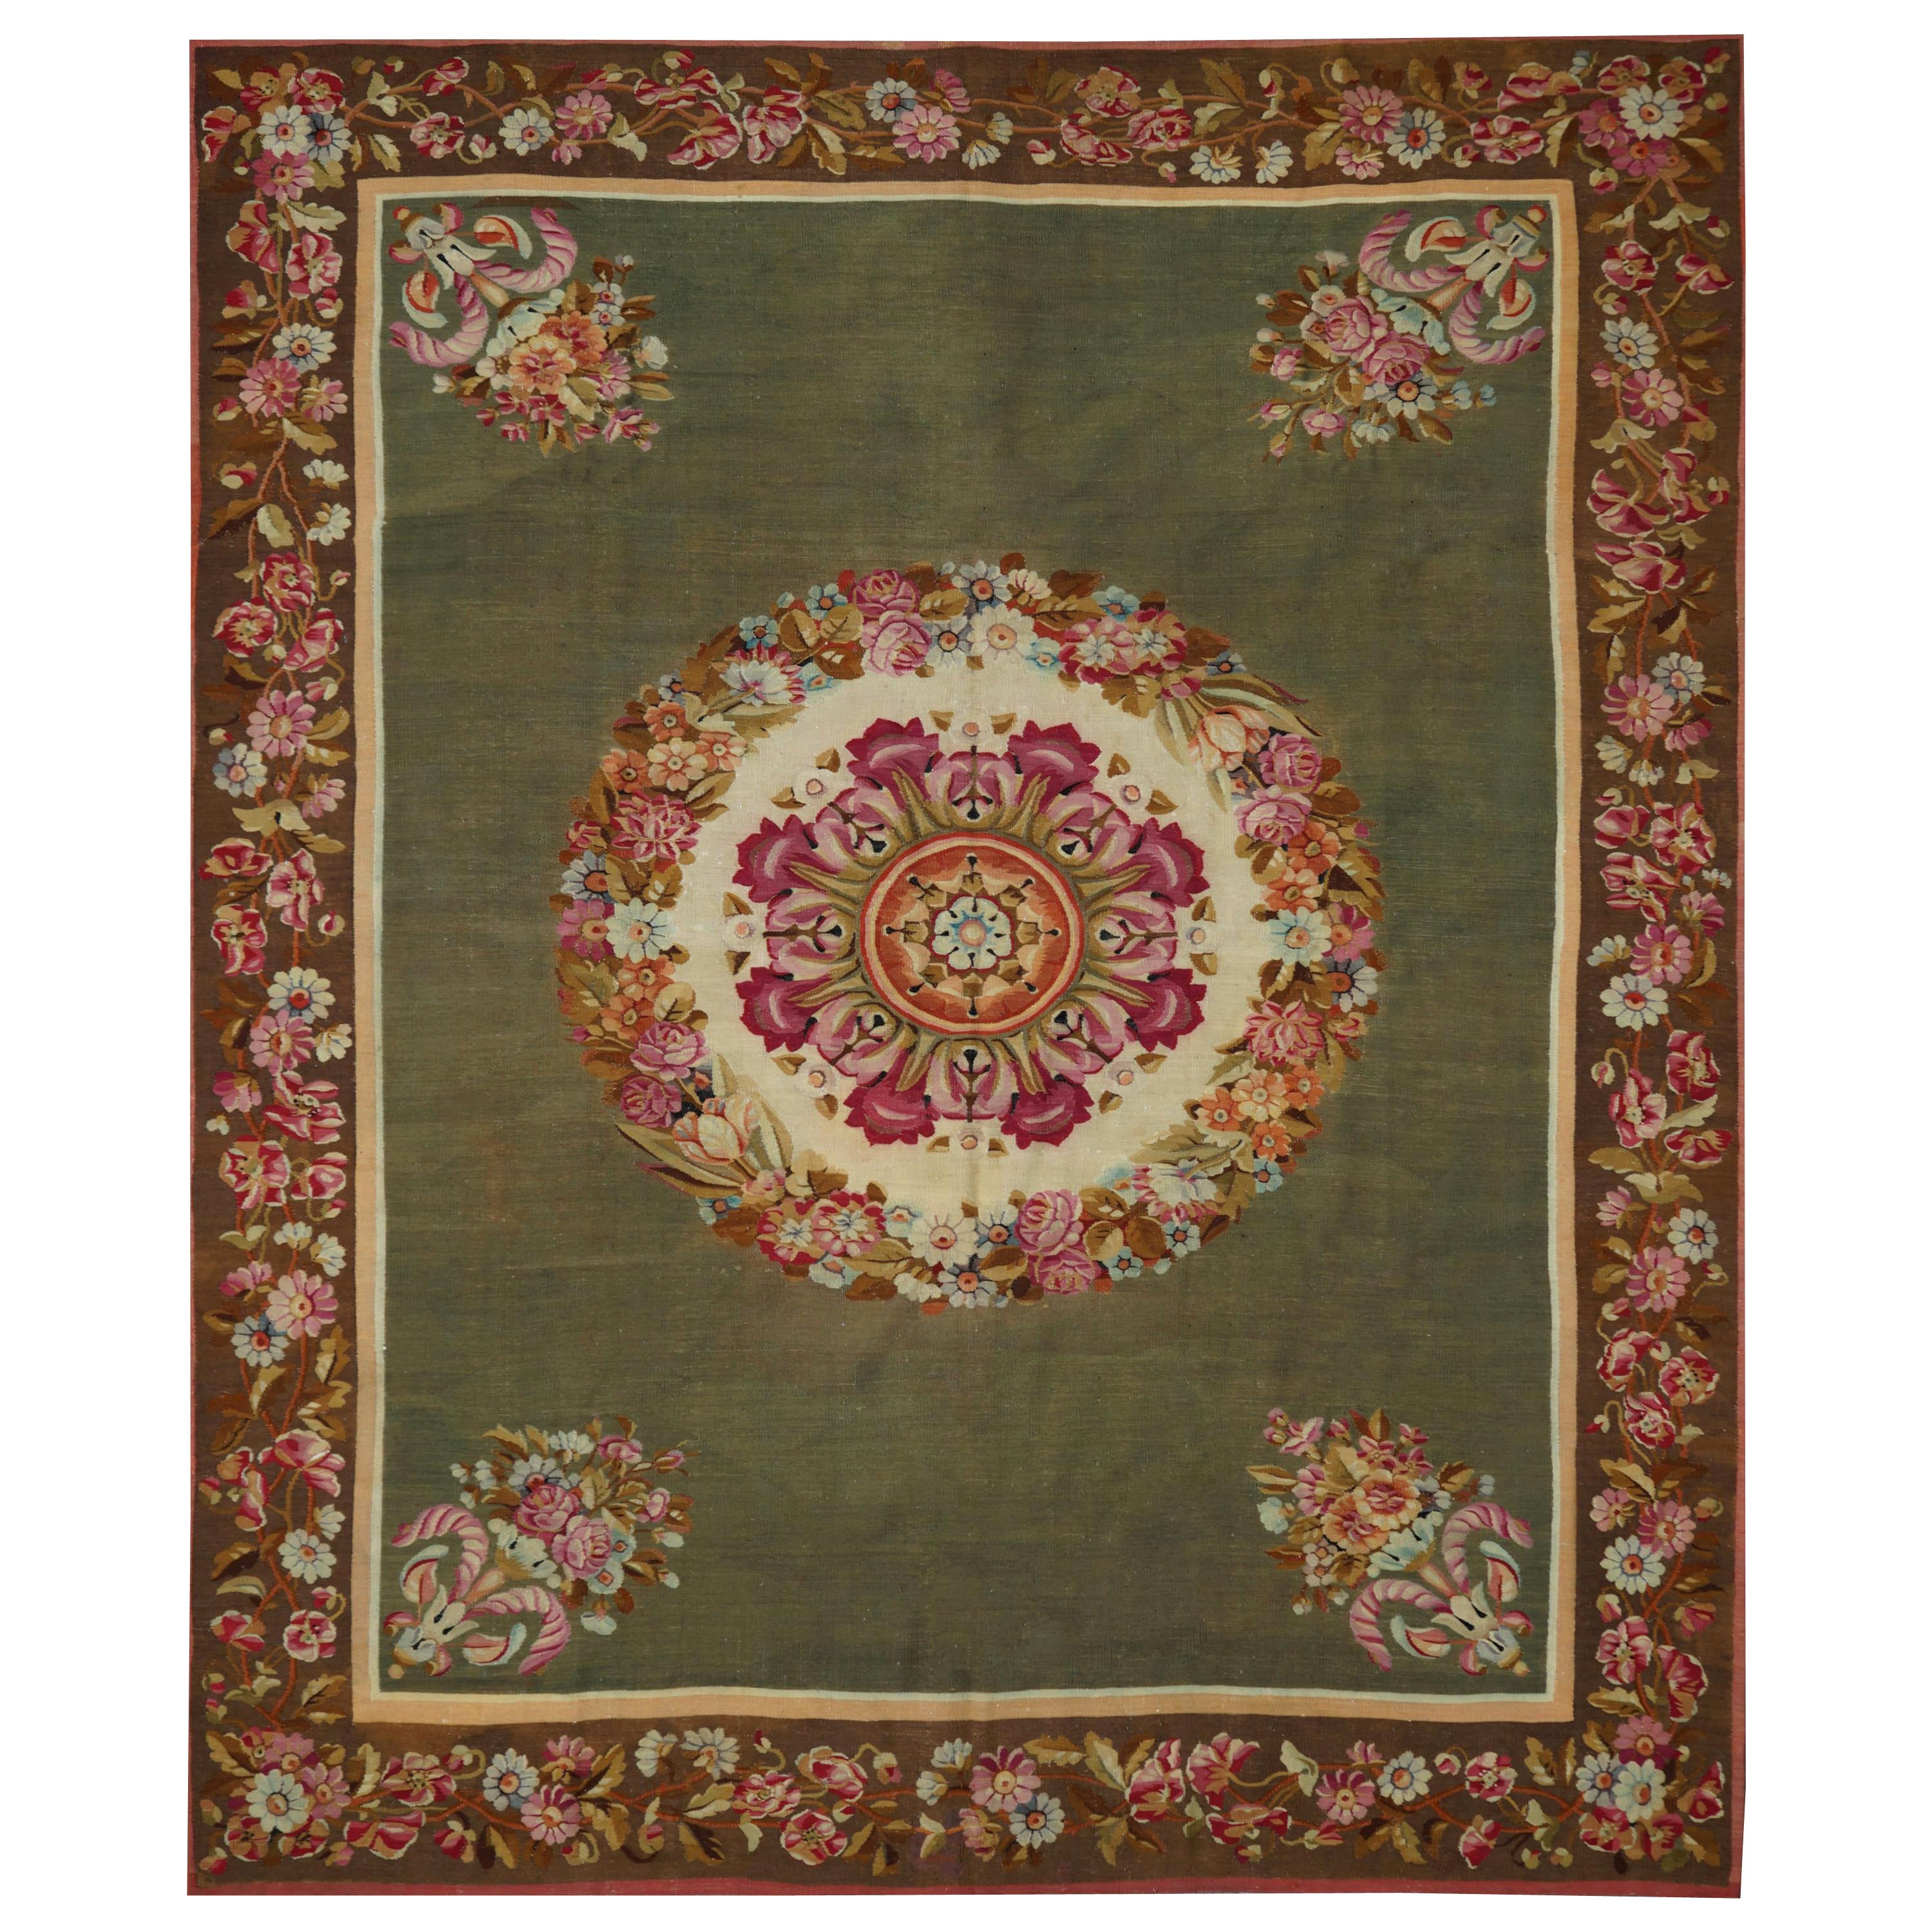 Handgewebter Aubusson-Teppich aus dem 19. Jahrhundert, grün mit Blumen